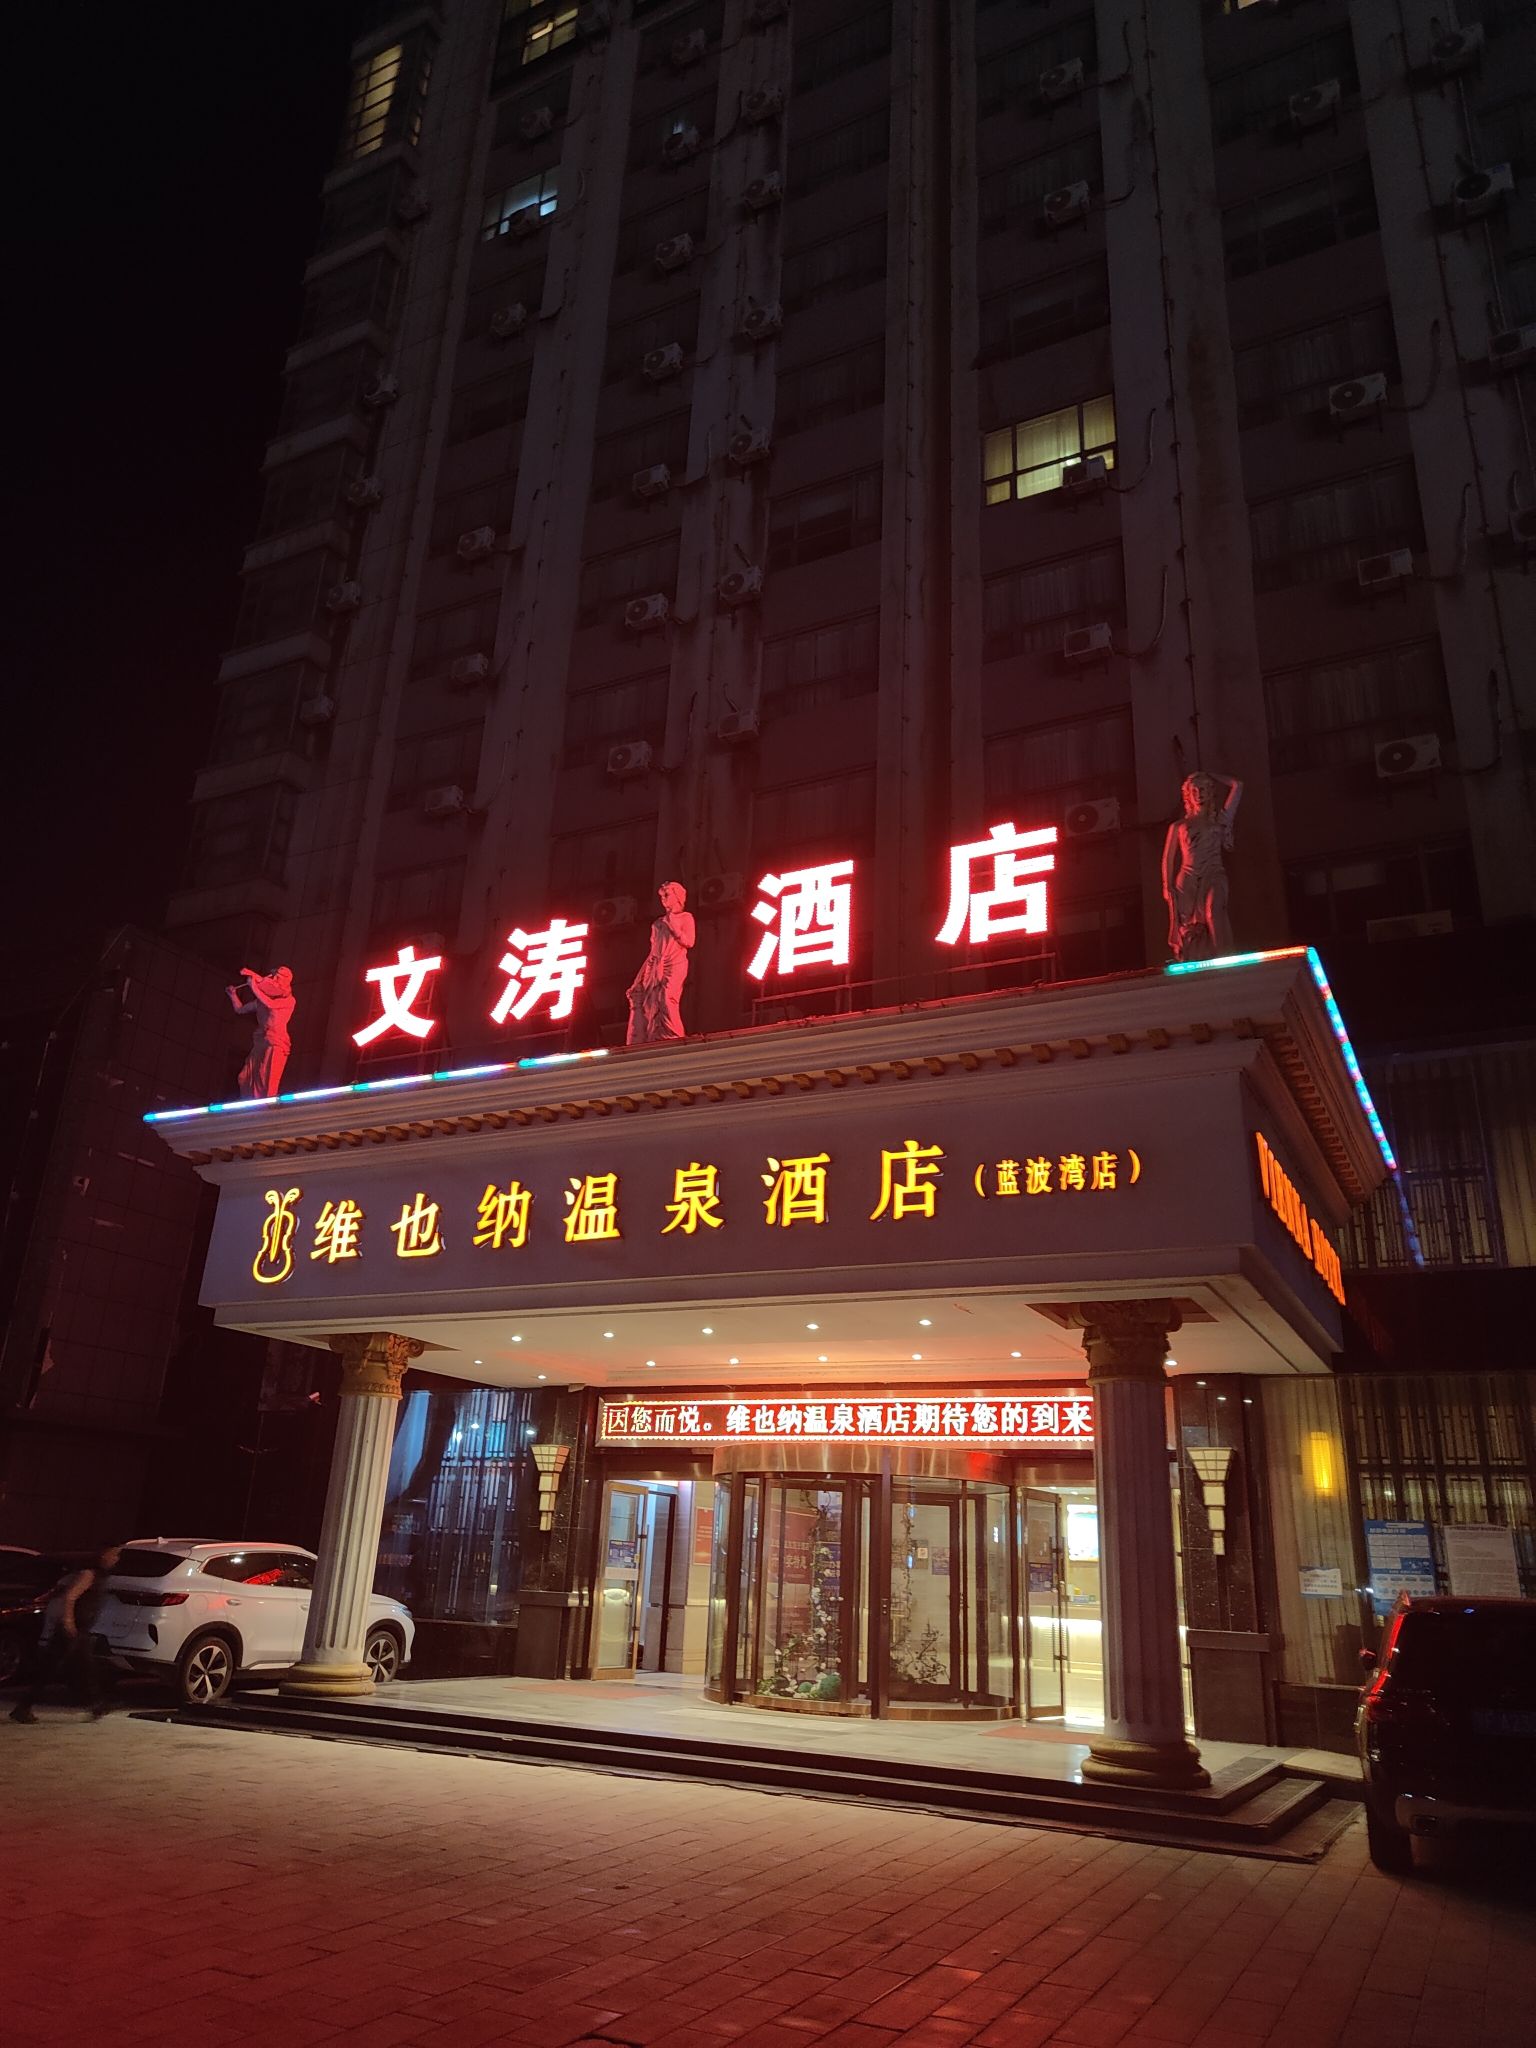 这是湖北襄阳宜城的一家酒店，跟着导航可以找到位置，酒店有自己的停车场，面积不小，酒店挺新的，早餐也不